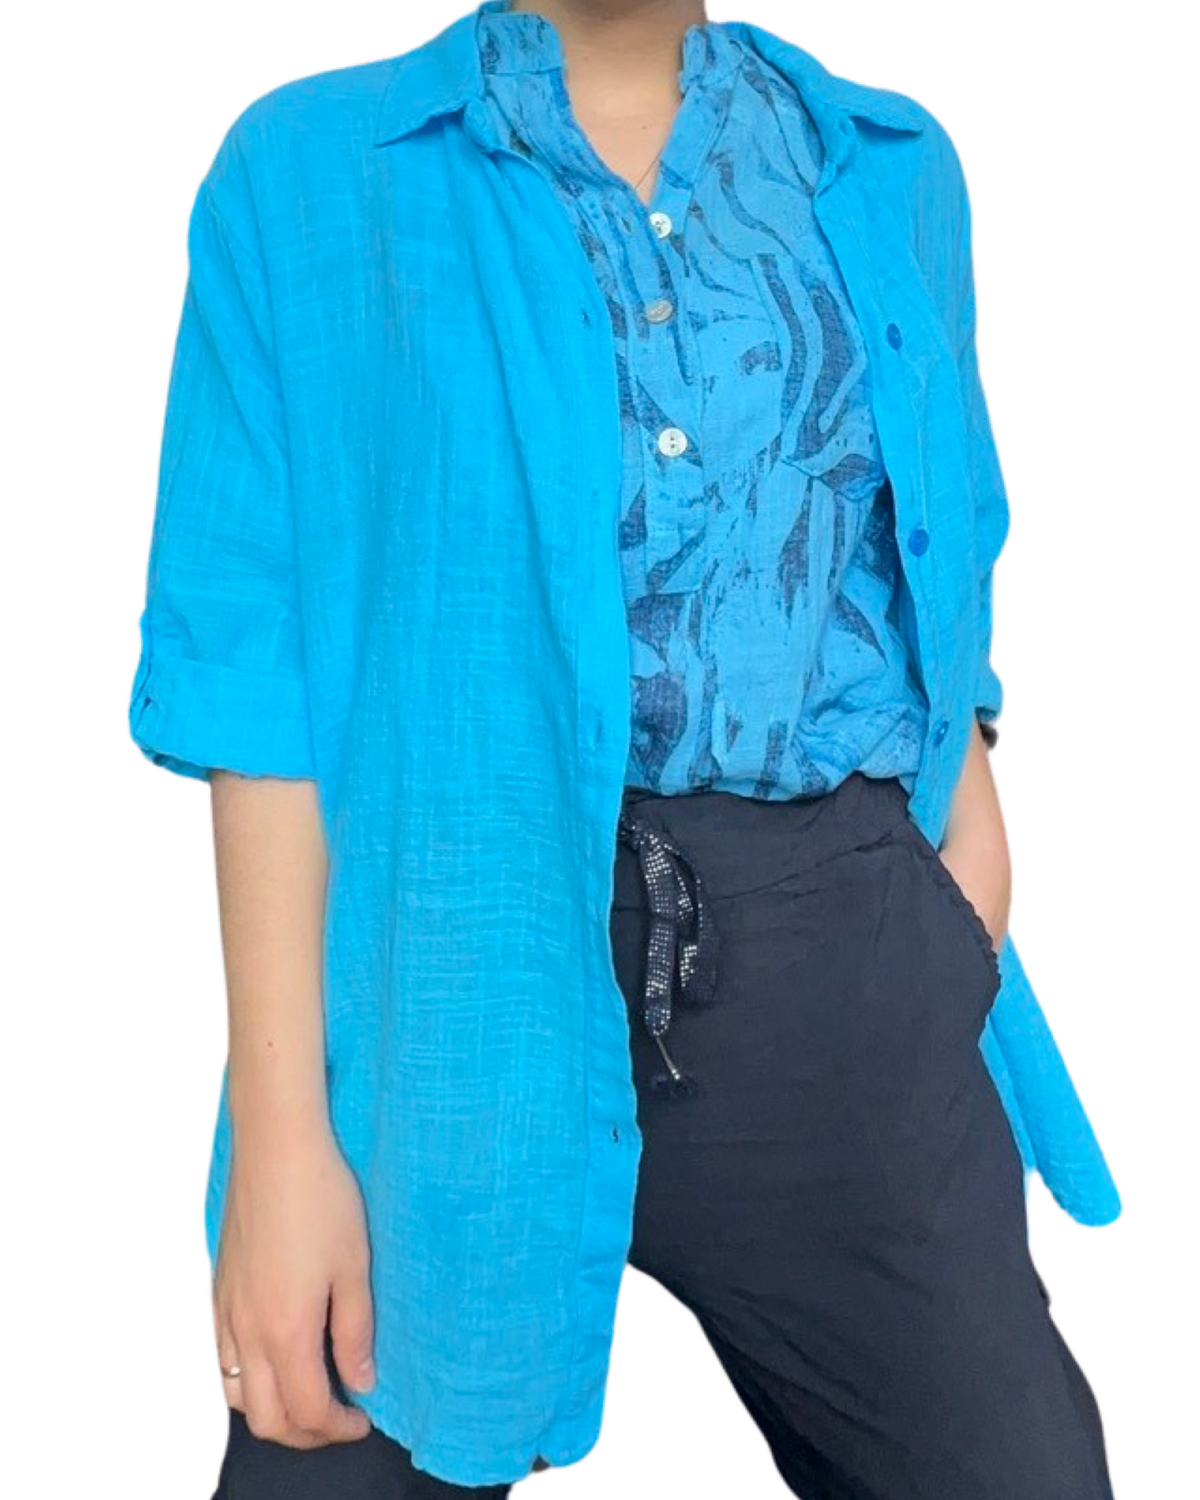 Blouse turquoise pour femme avec imprimé floral abstrait avec surchemise turquoise.